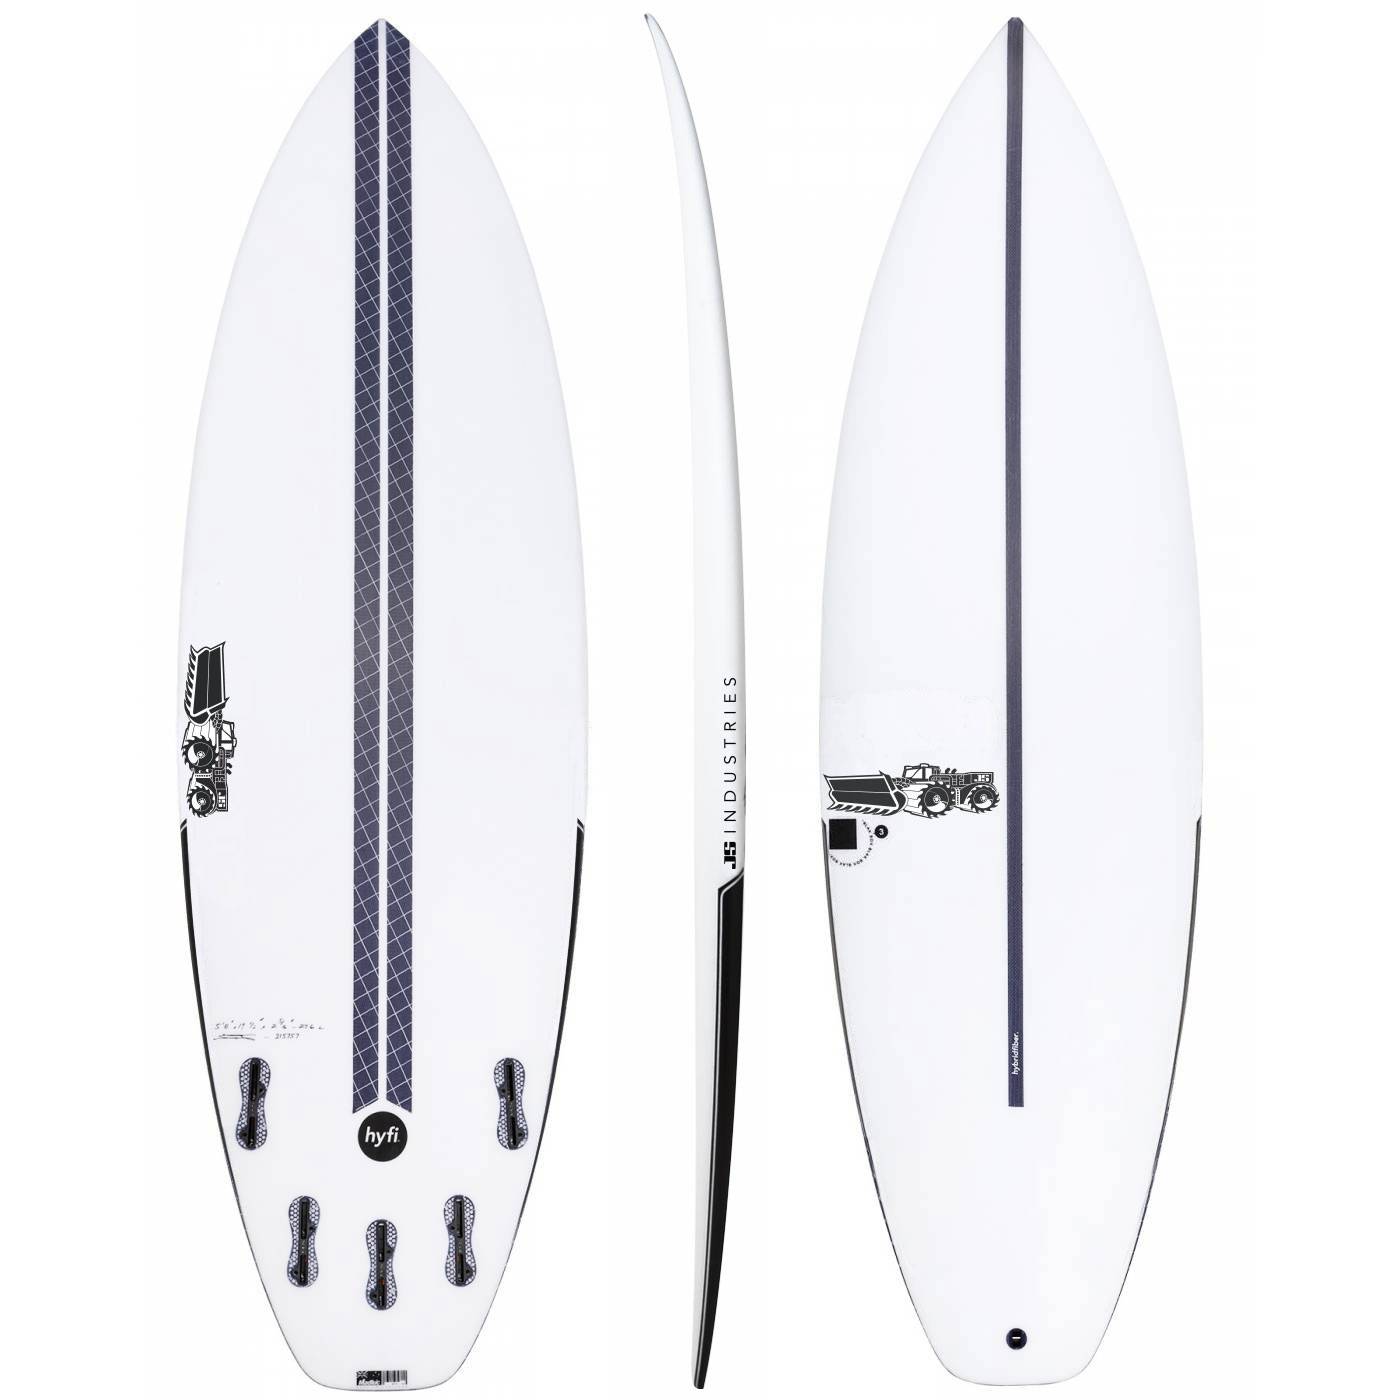 JS BLAK BOX 3 HYFI 6'4 SURFBOARD